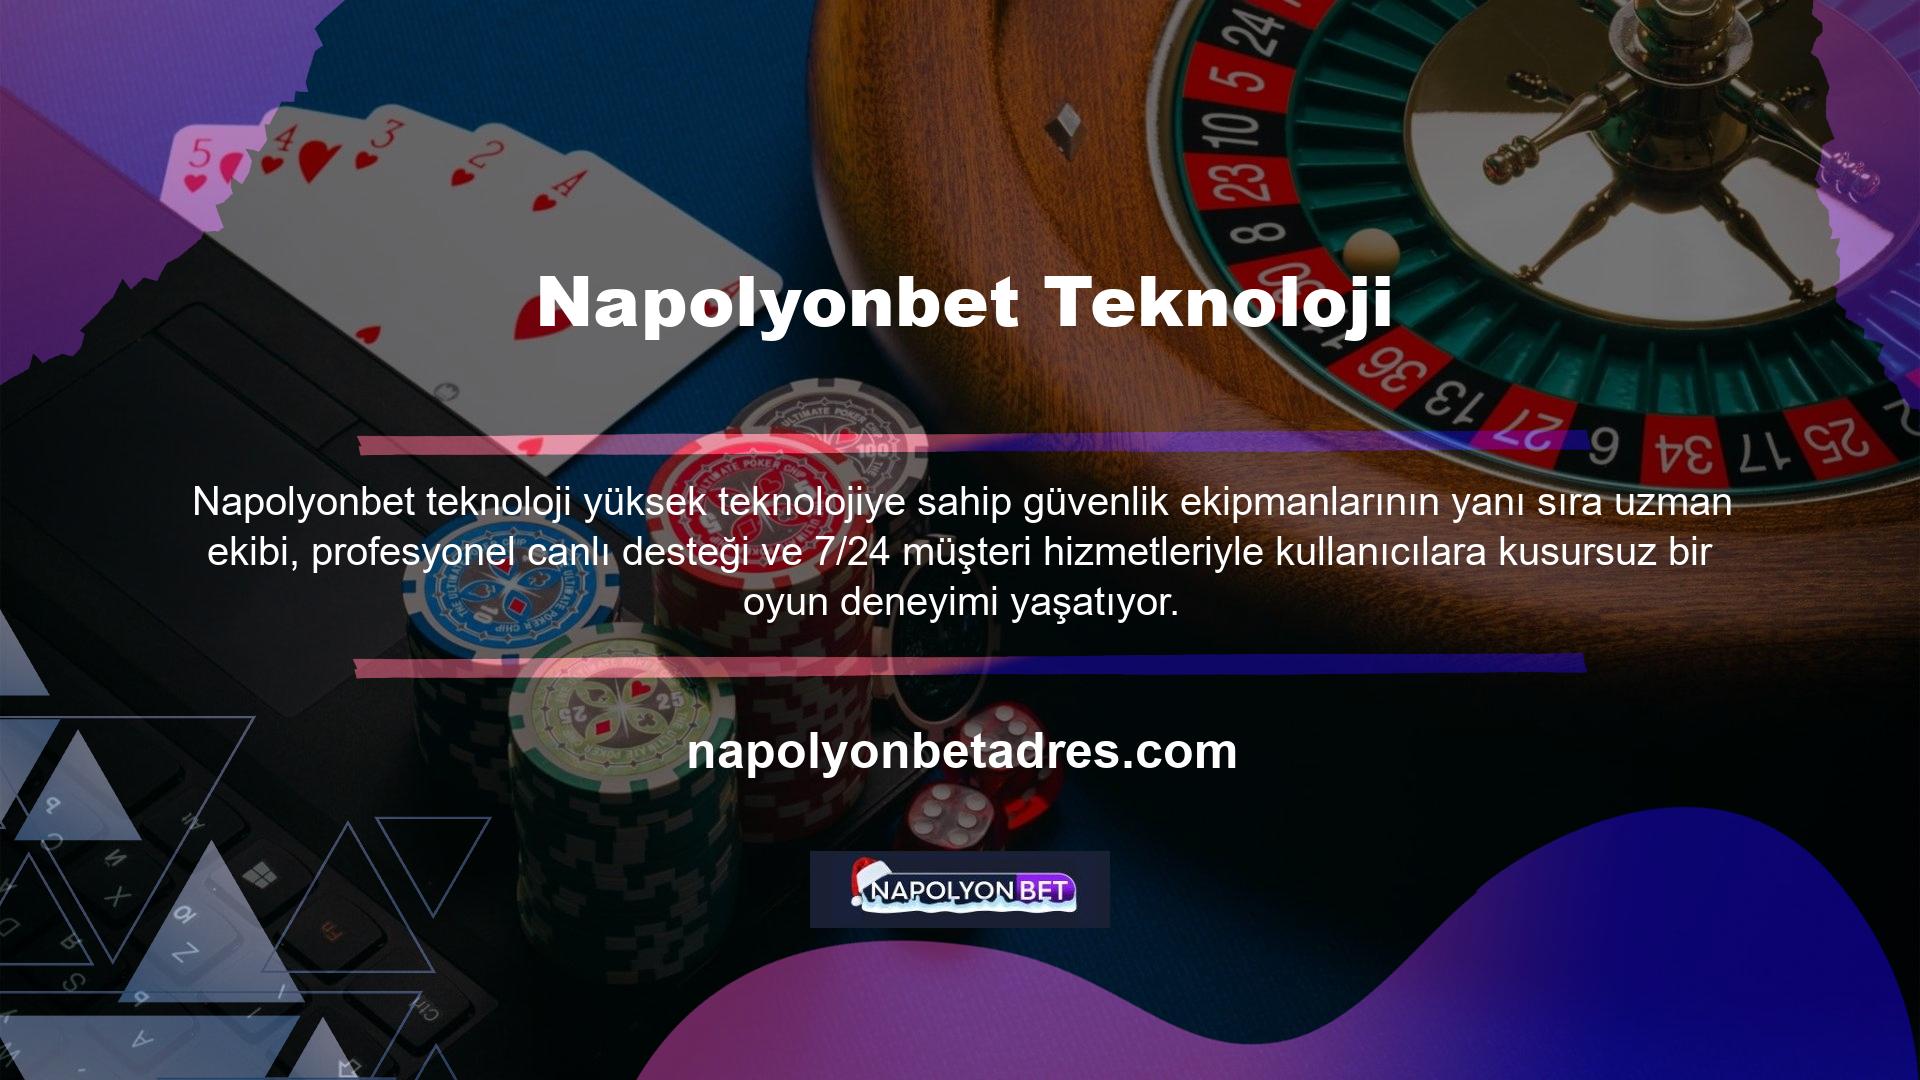 Türkçe ve İngilizce desteği Türk oyun severleri tatmin edecektir